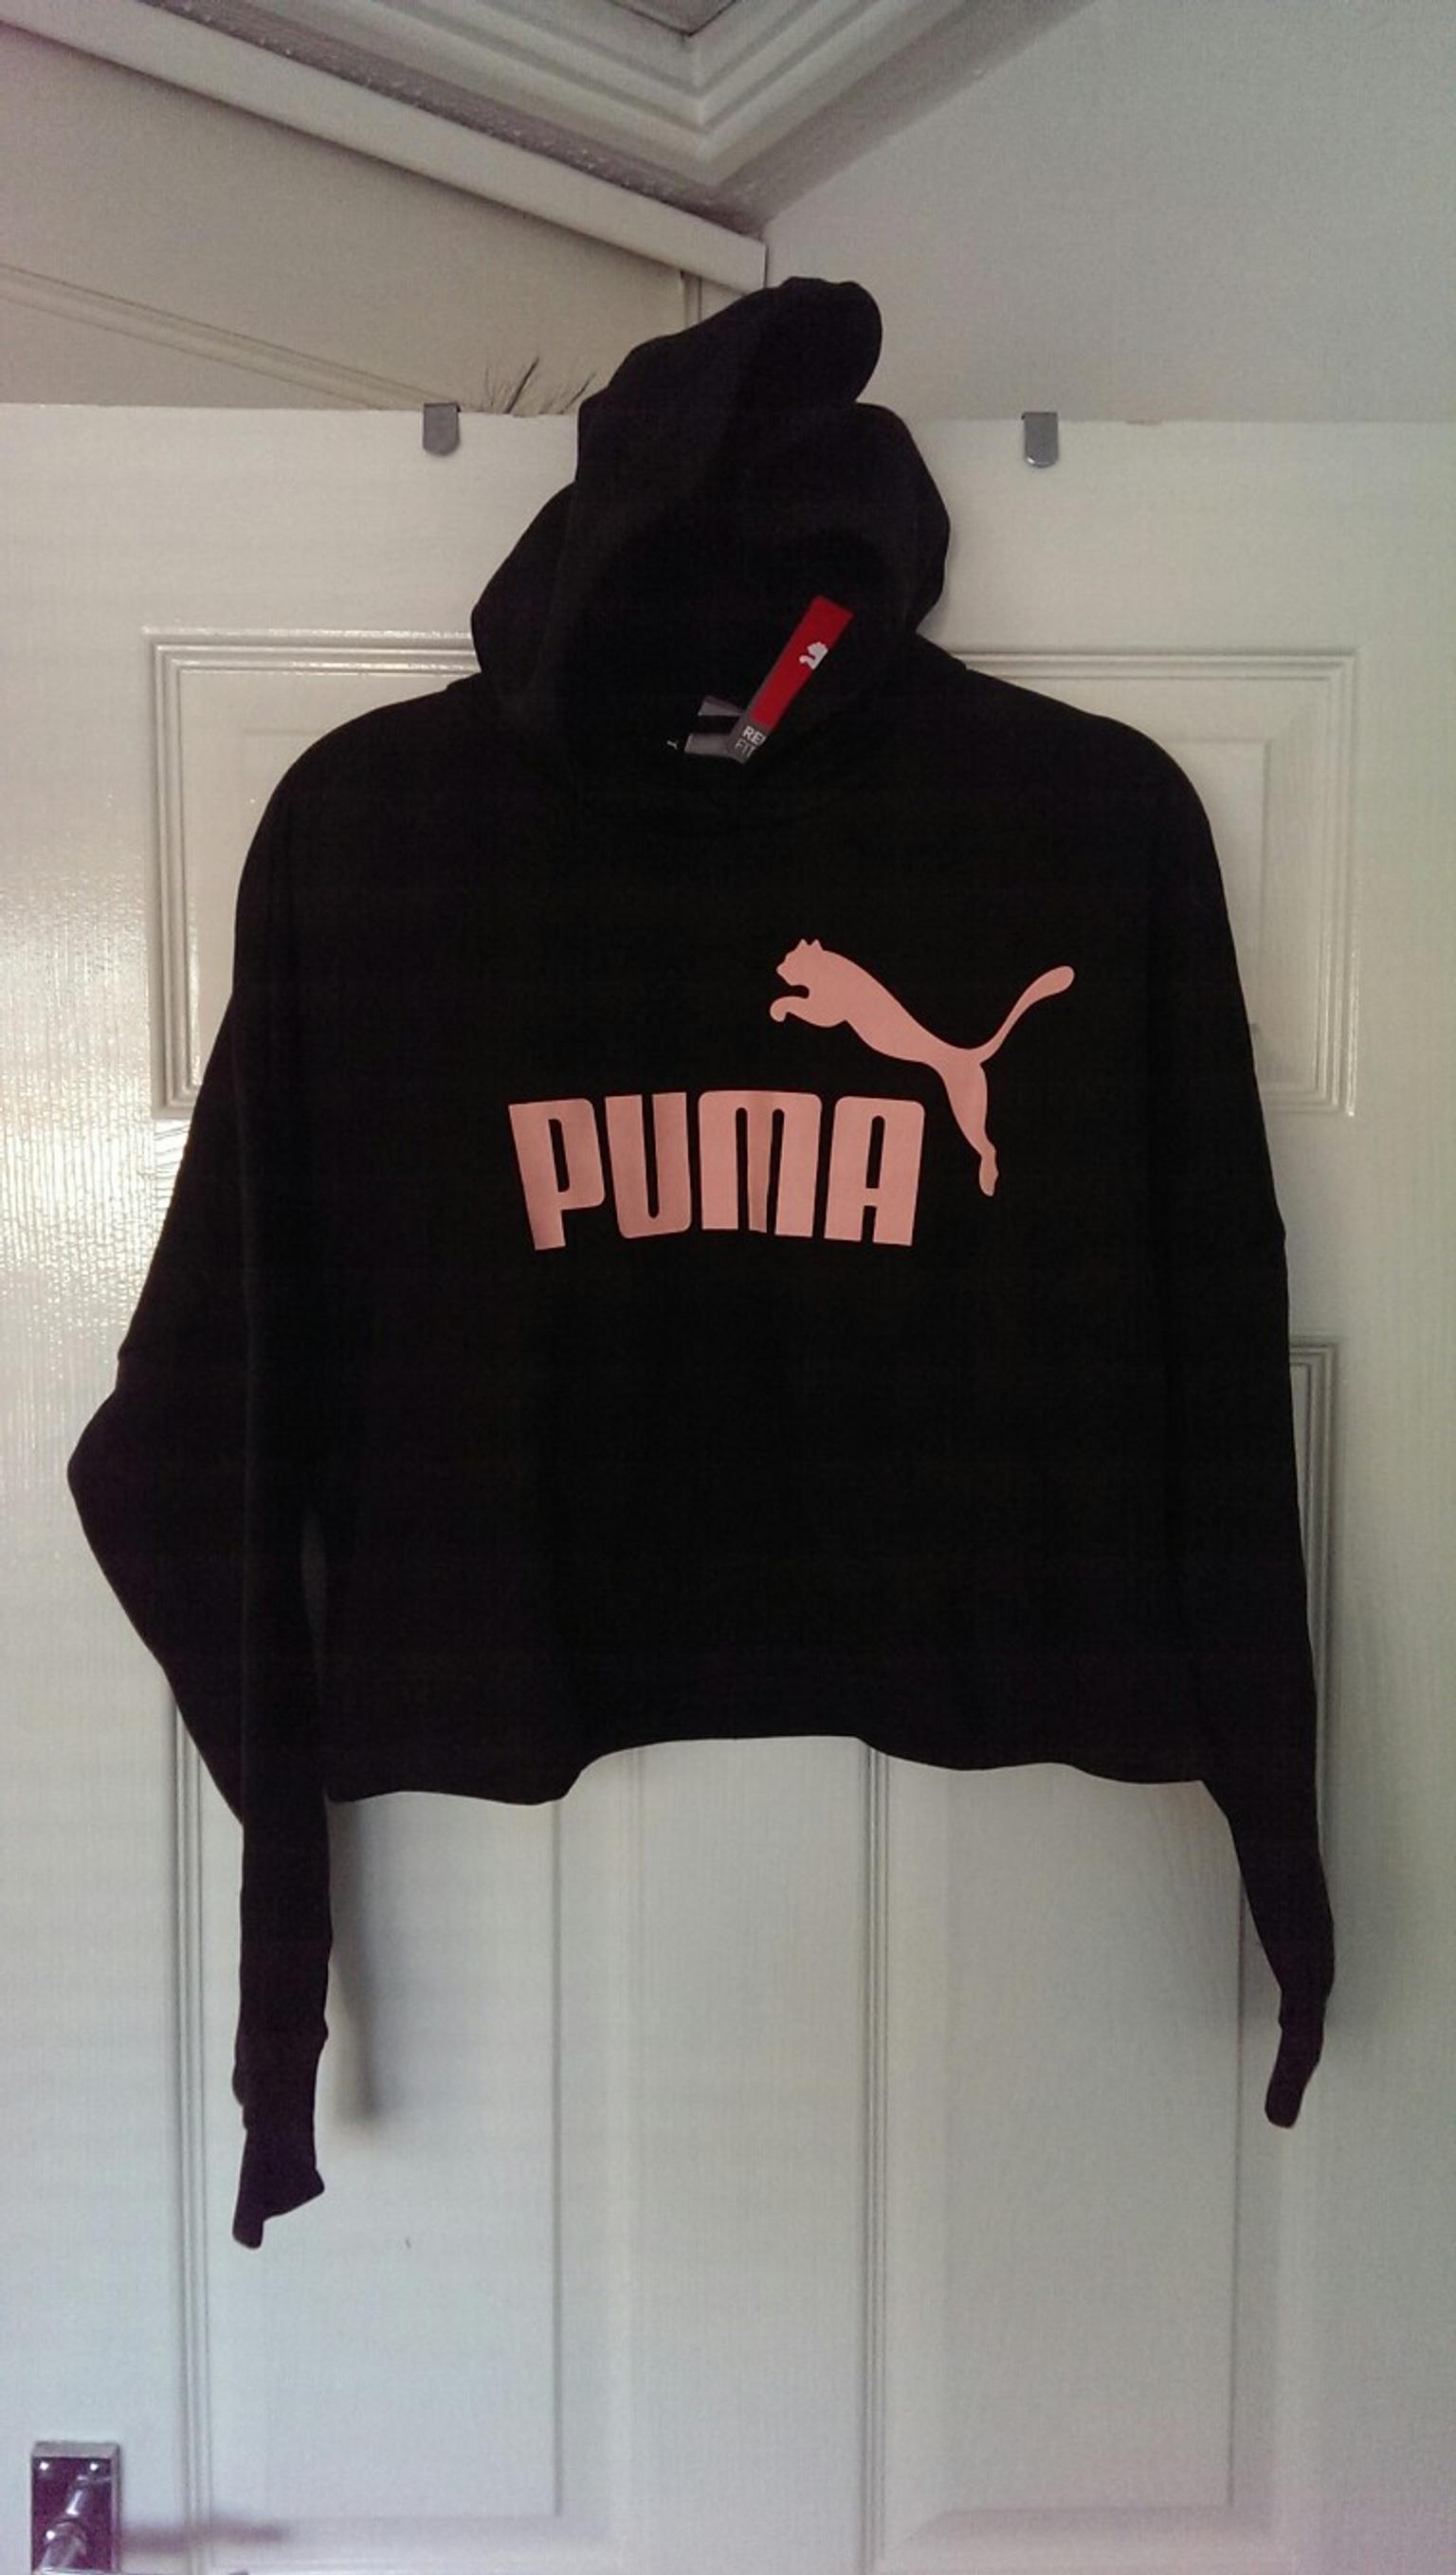 girls puma jumper